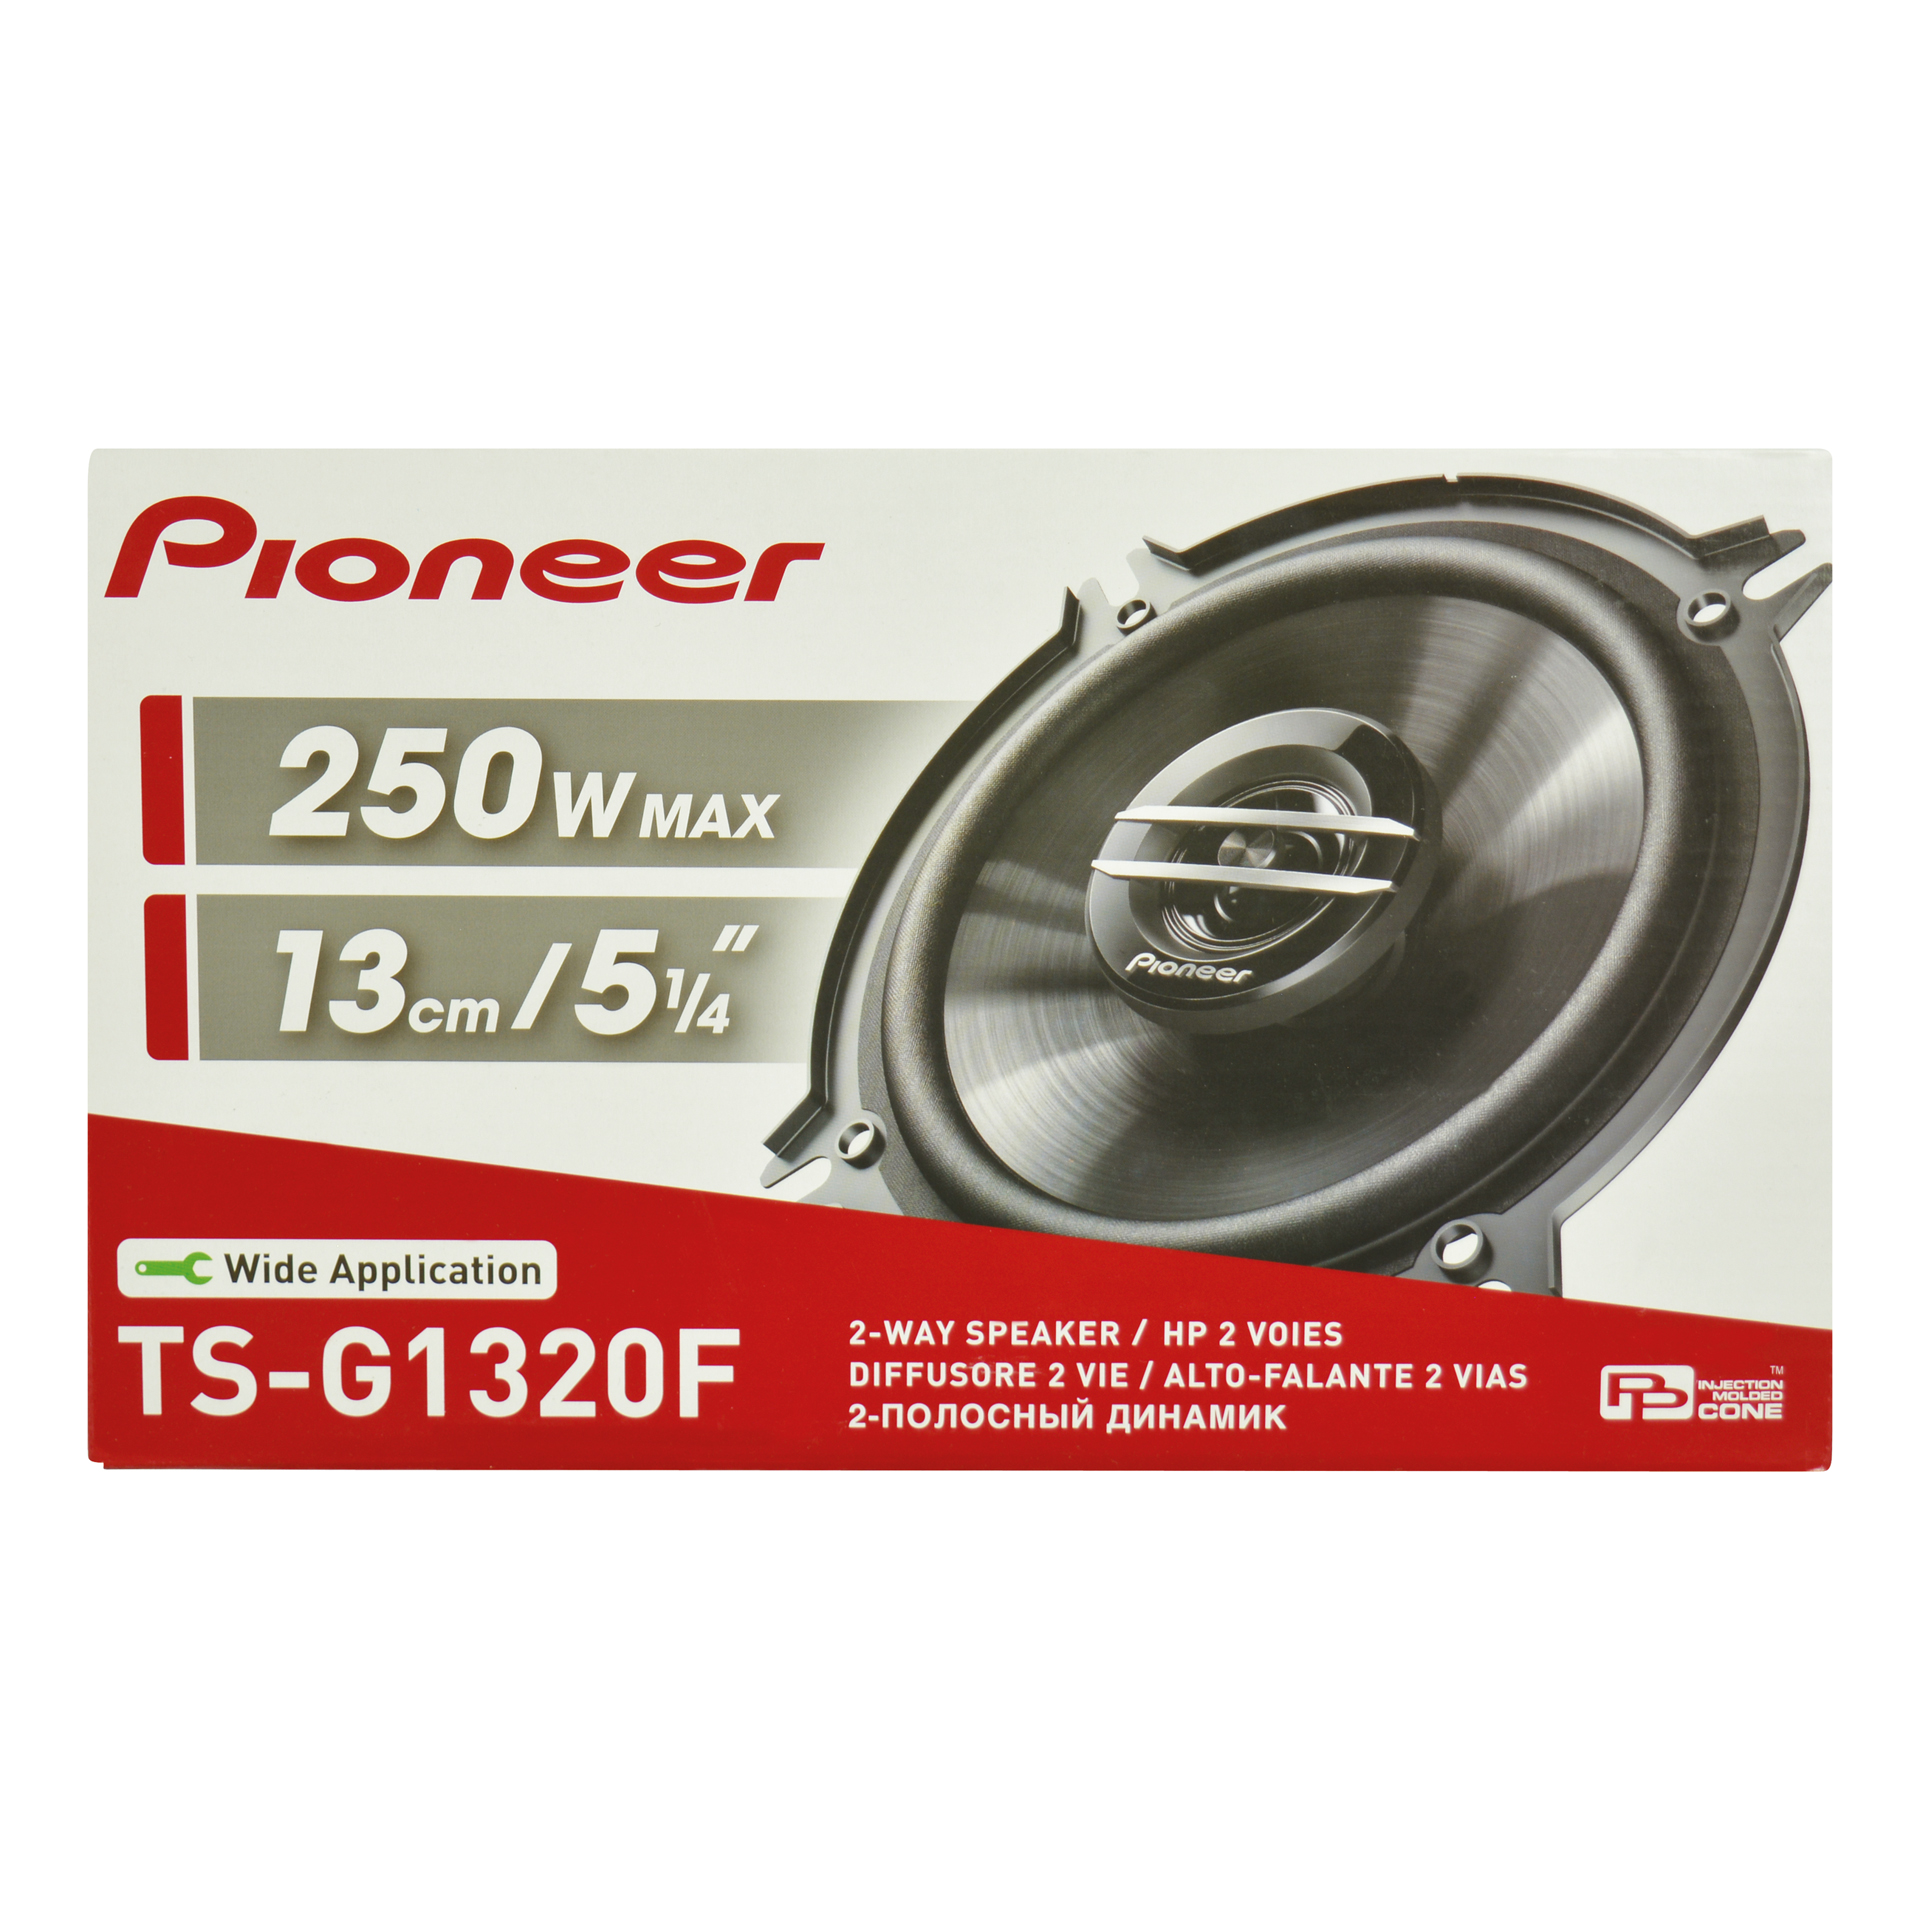 Pioneer Pioneer TS-G1320F Speakerset 250W 13cm 0810515